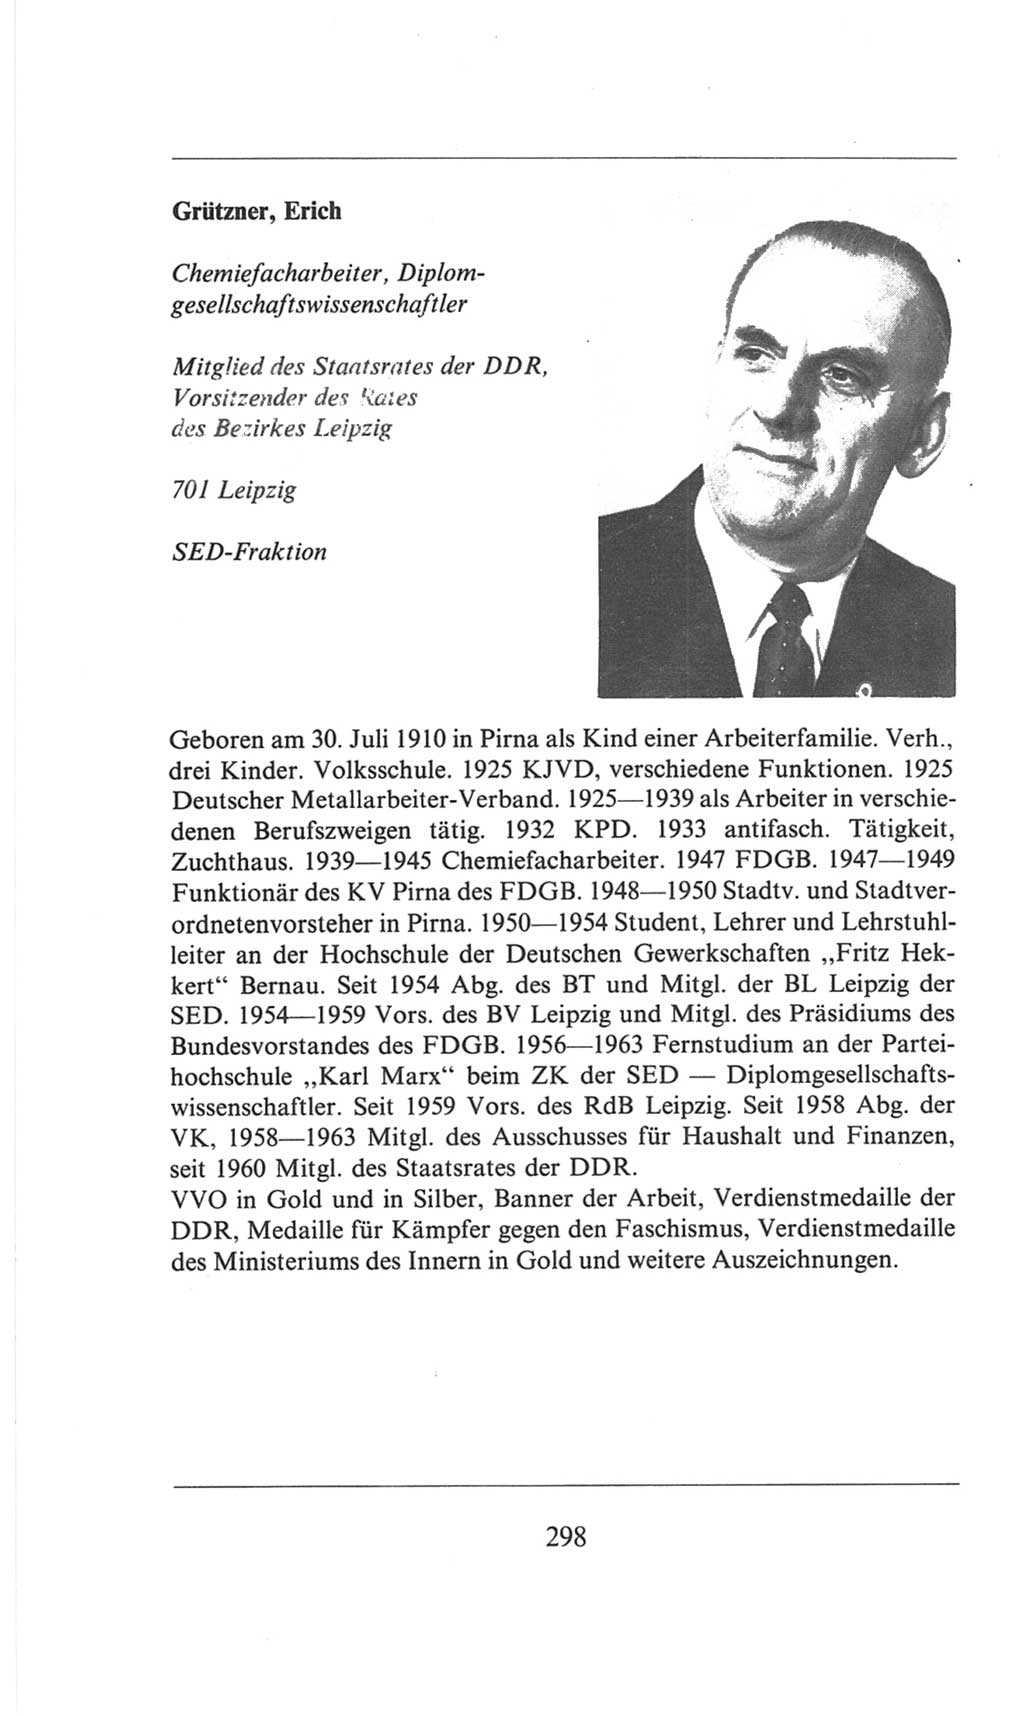 Volkskammer (VK) der Deutschen Demokratischen Republik (DDR), 6. Wahlperiode 1971-1976, Seite 298 (VK. DDR 6. WP. 1971-1976, S. 298)